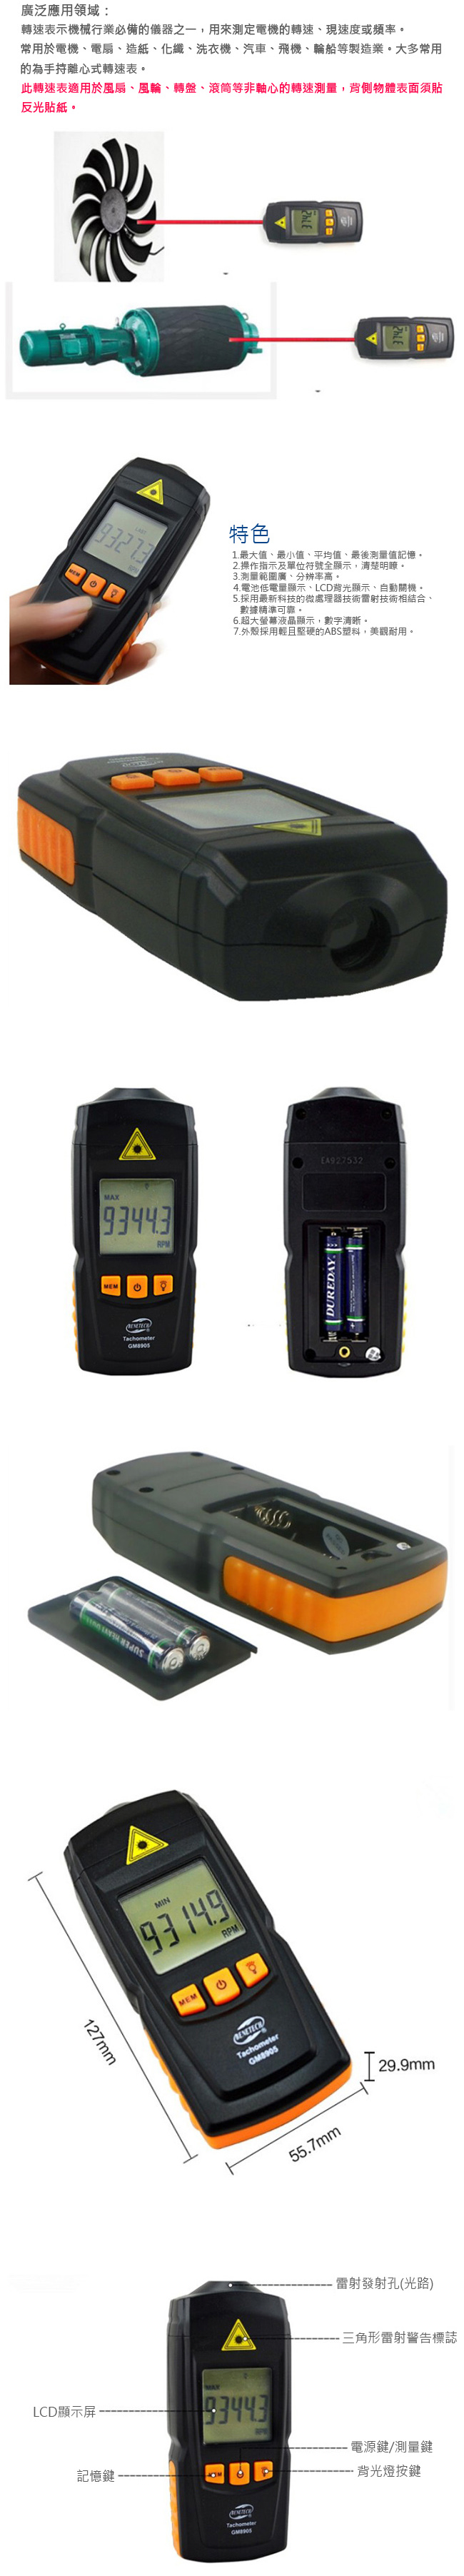 標智 GM8905 數位顯示鐳射轉速表 非接觸式光電轉速計